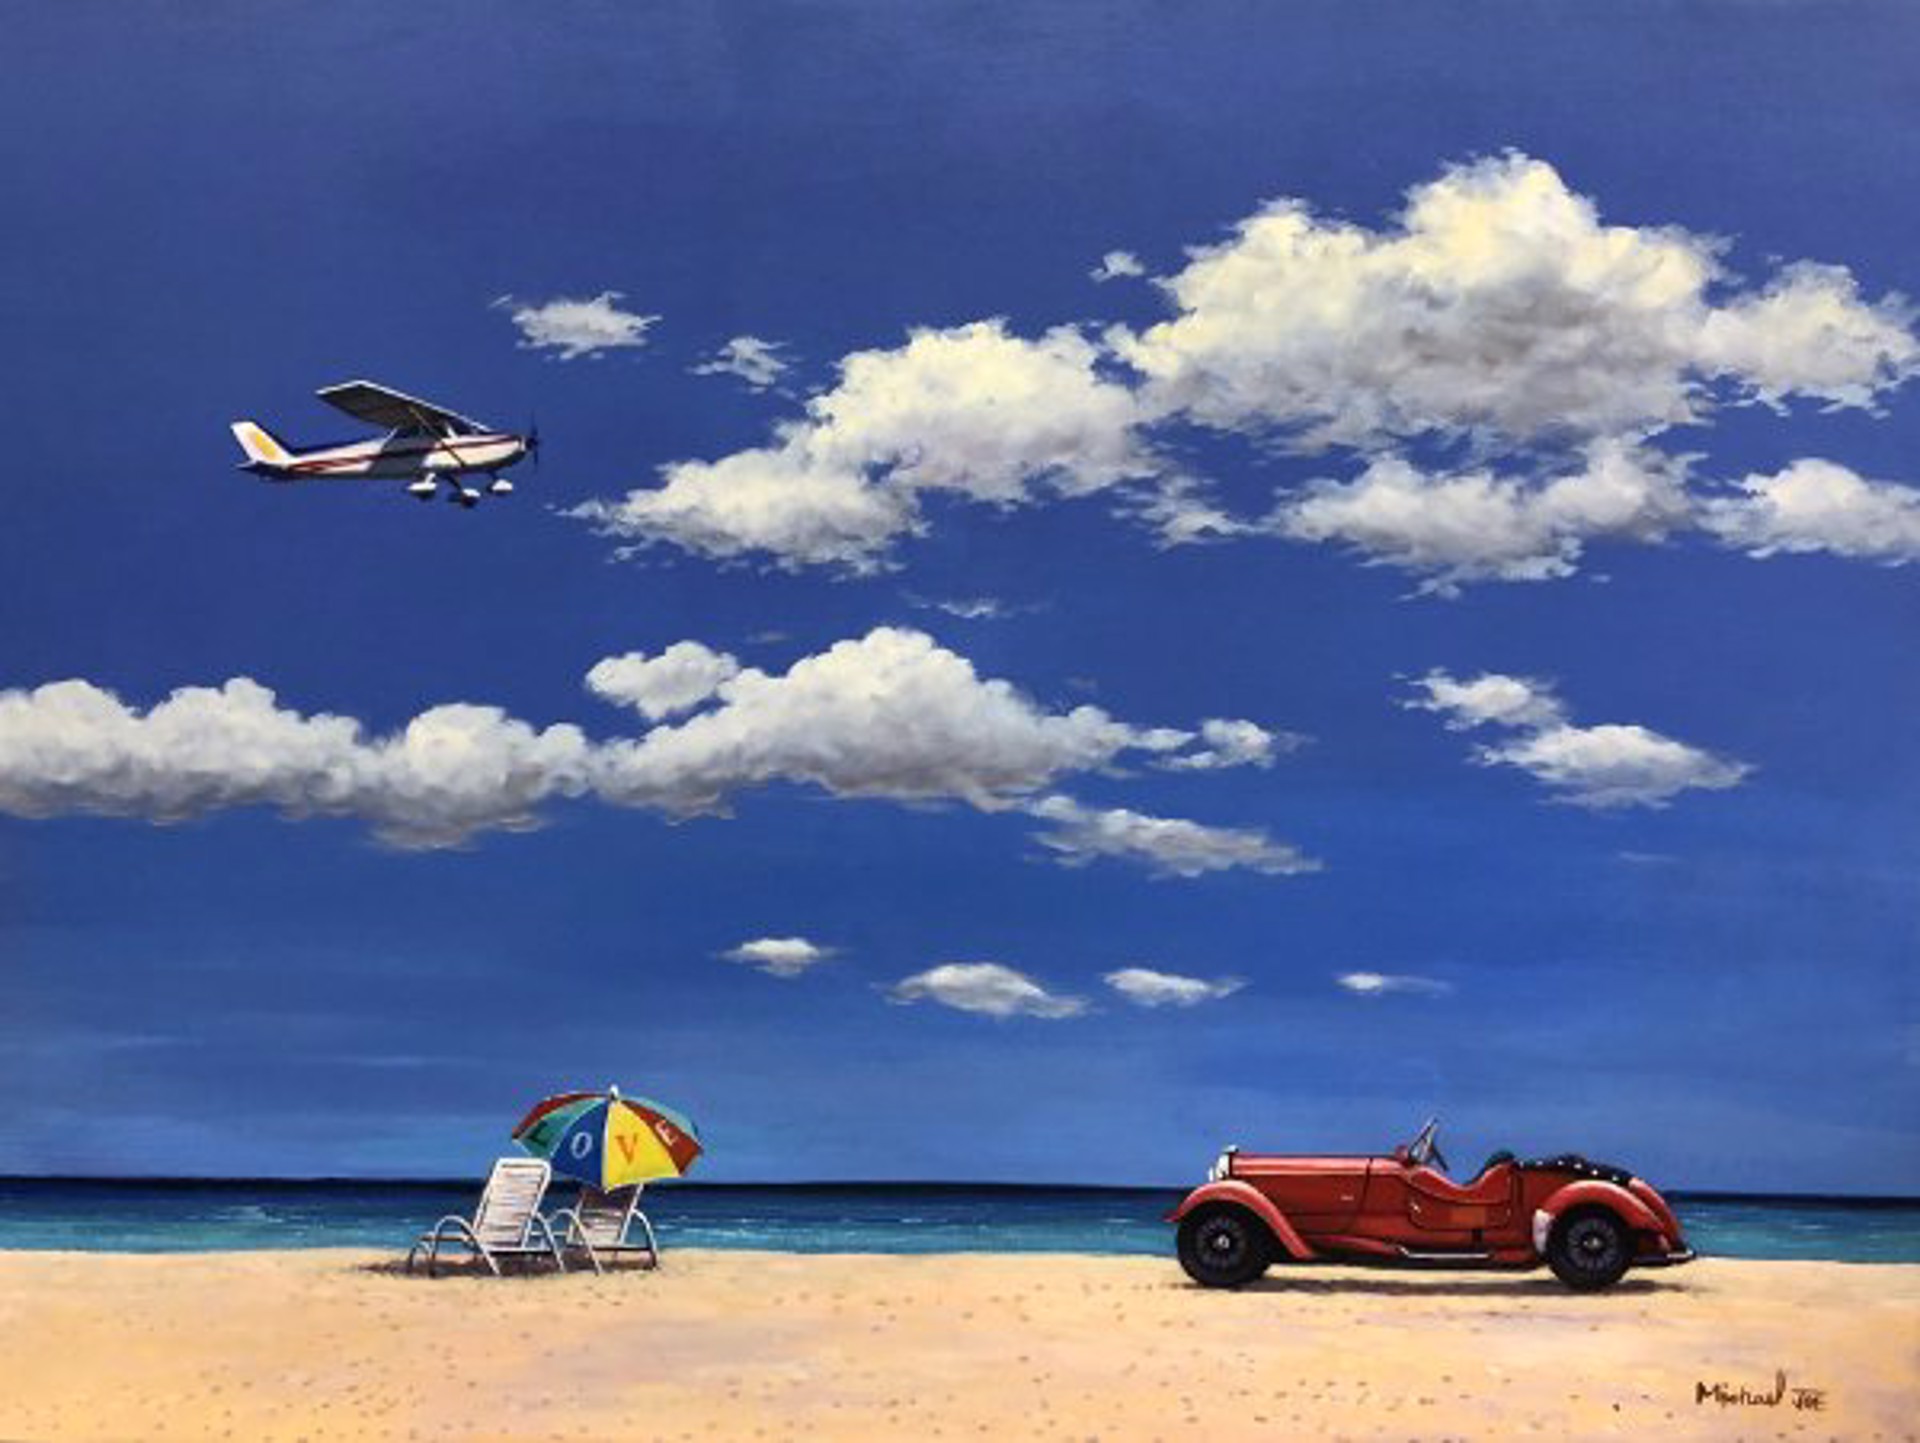 Love Plane Car at the Beach by Michael Joe